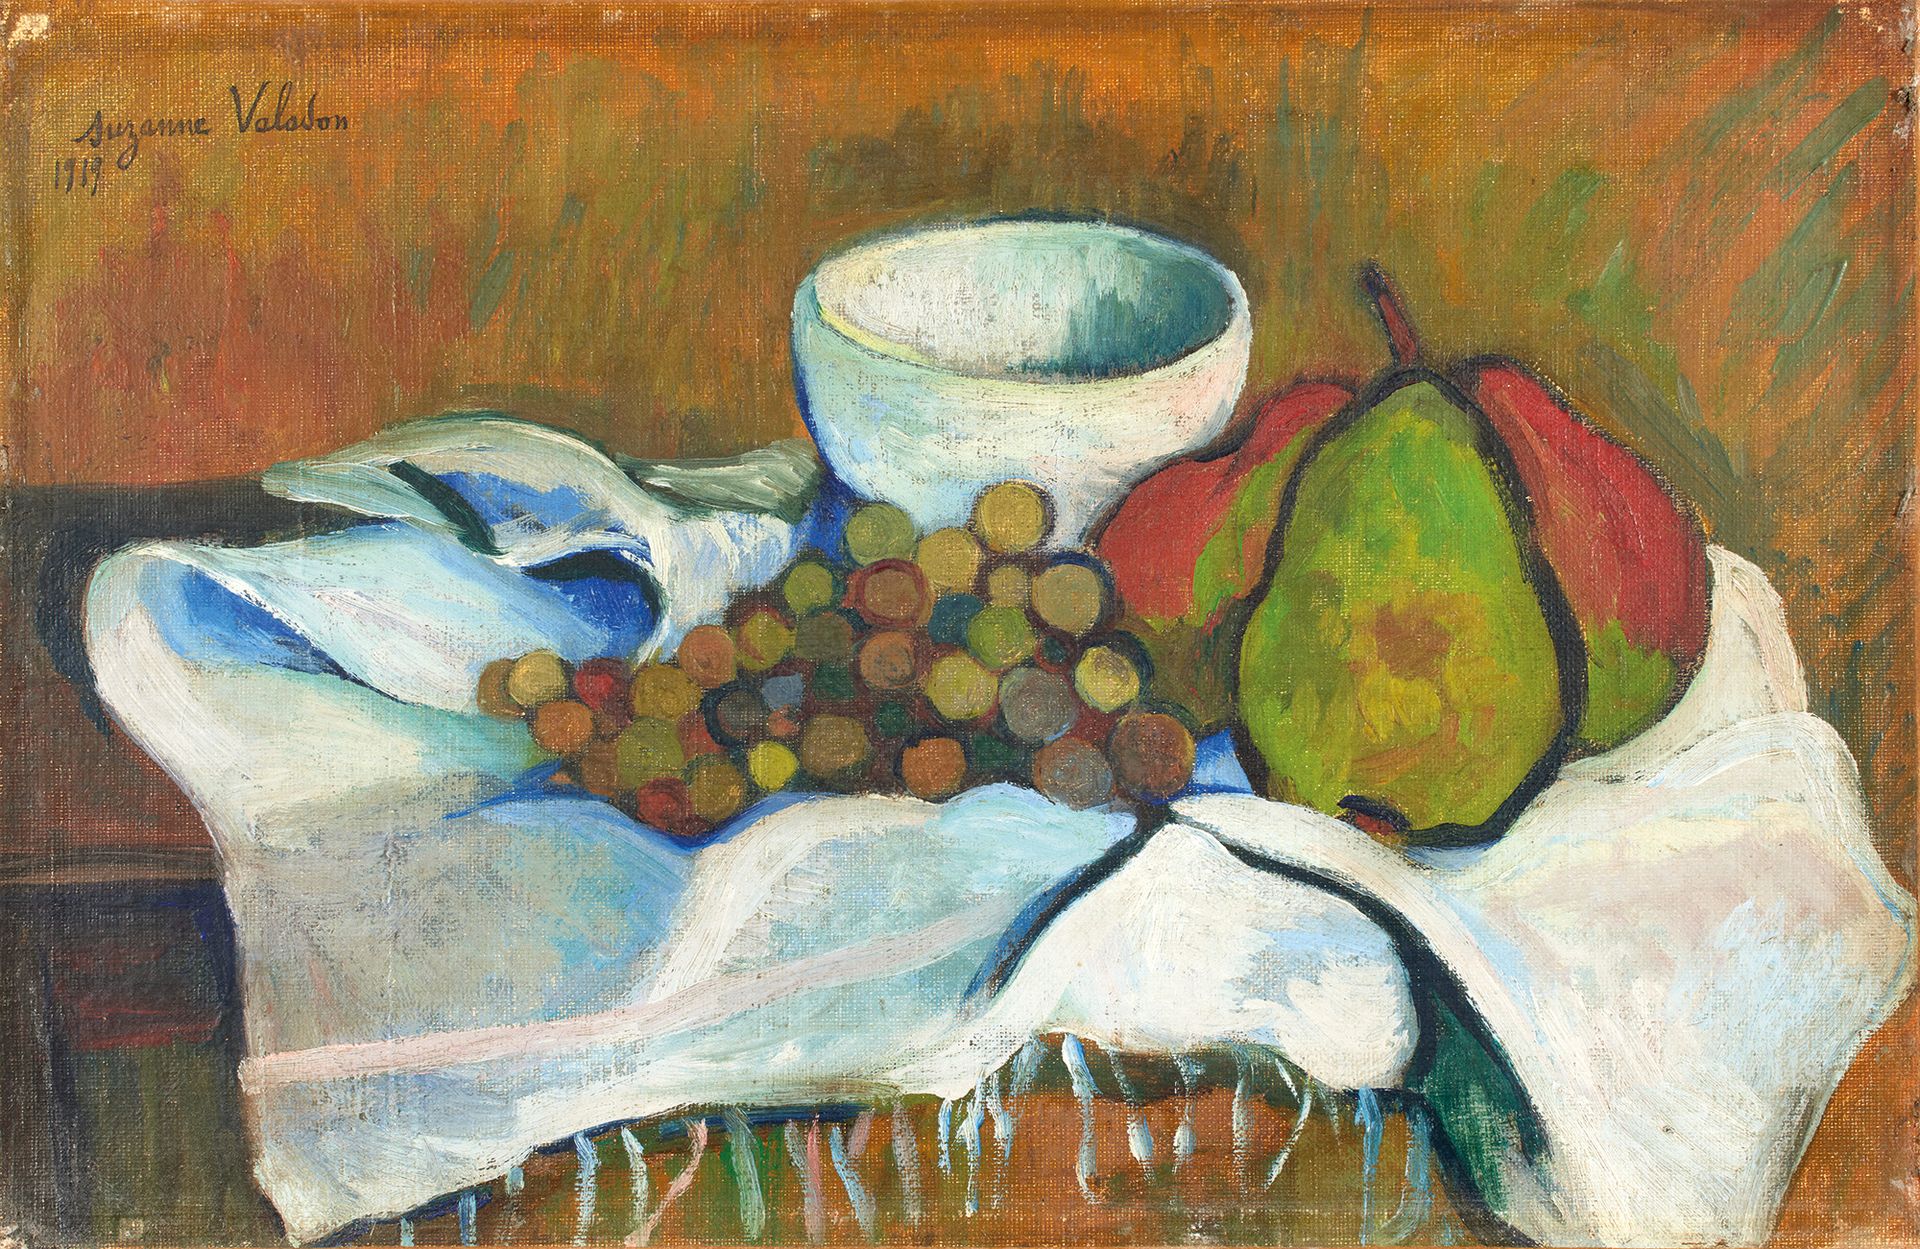 Suzanne VALADON (1865-1938) 第85号拍品
苏珊娜-巴拉东(1865-1938)
梨子、葡萄和白色亚麻布的静物画，1919年。
布面油&hellip;